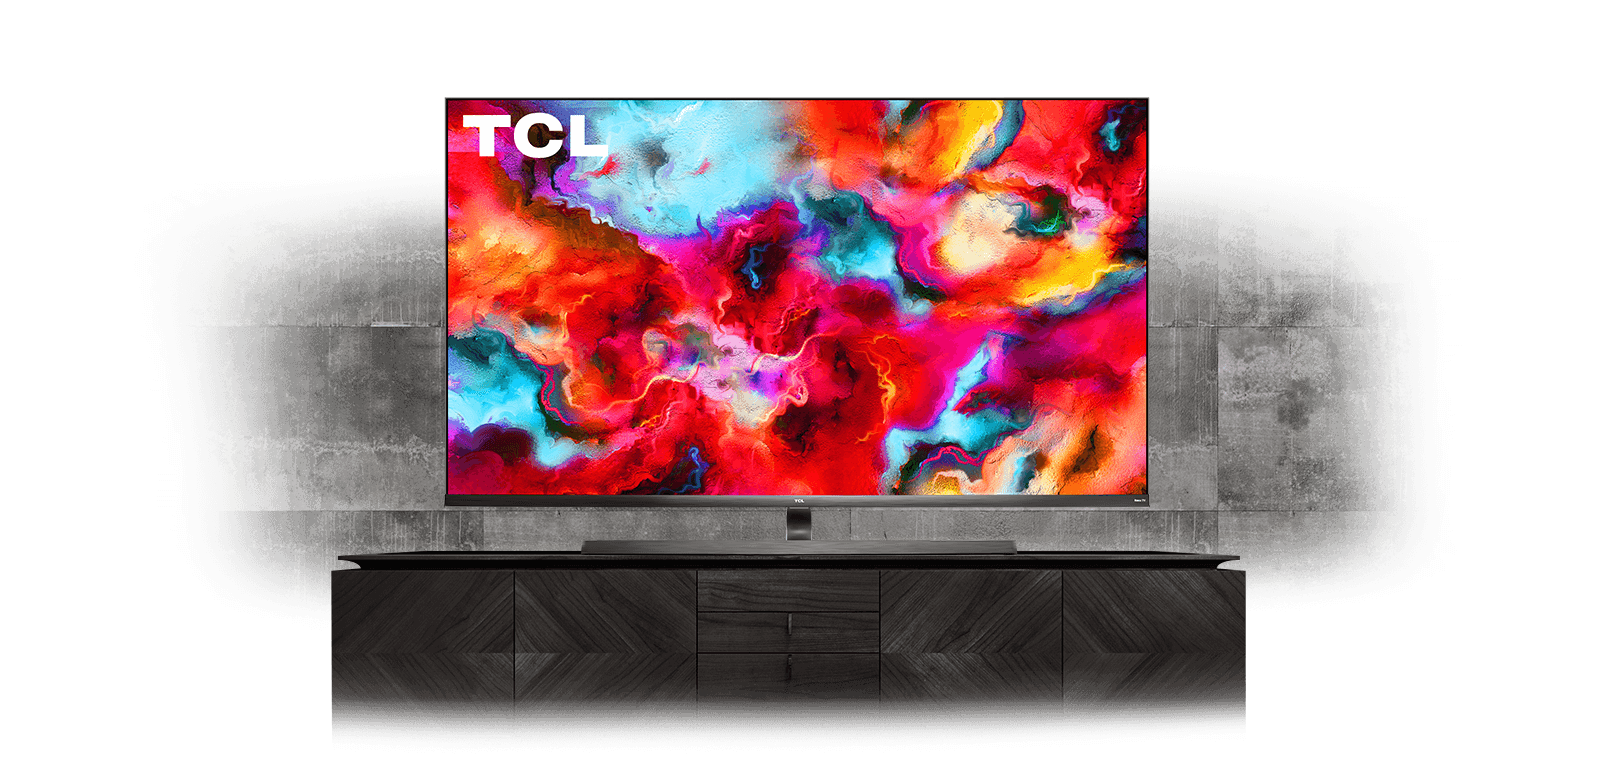 Телевизоры mini led. Телевизор QLED TCL 65c815. ТСЛ олед. Телевизор ТСЛ мини лед. Samsung Art TV 2022 год.